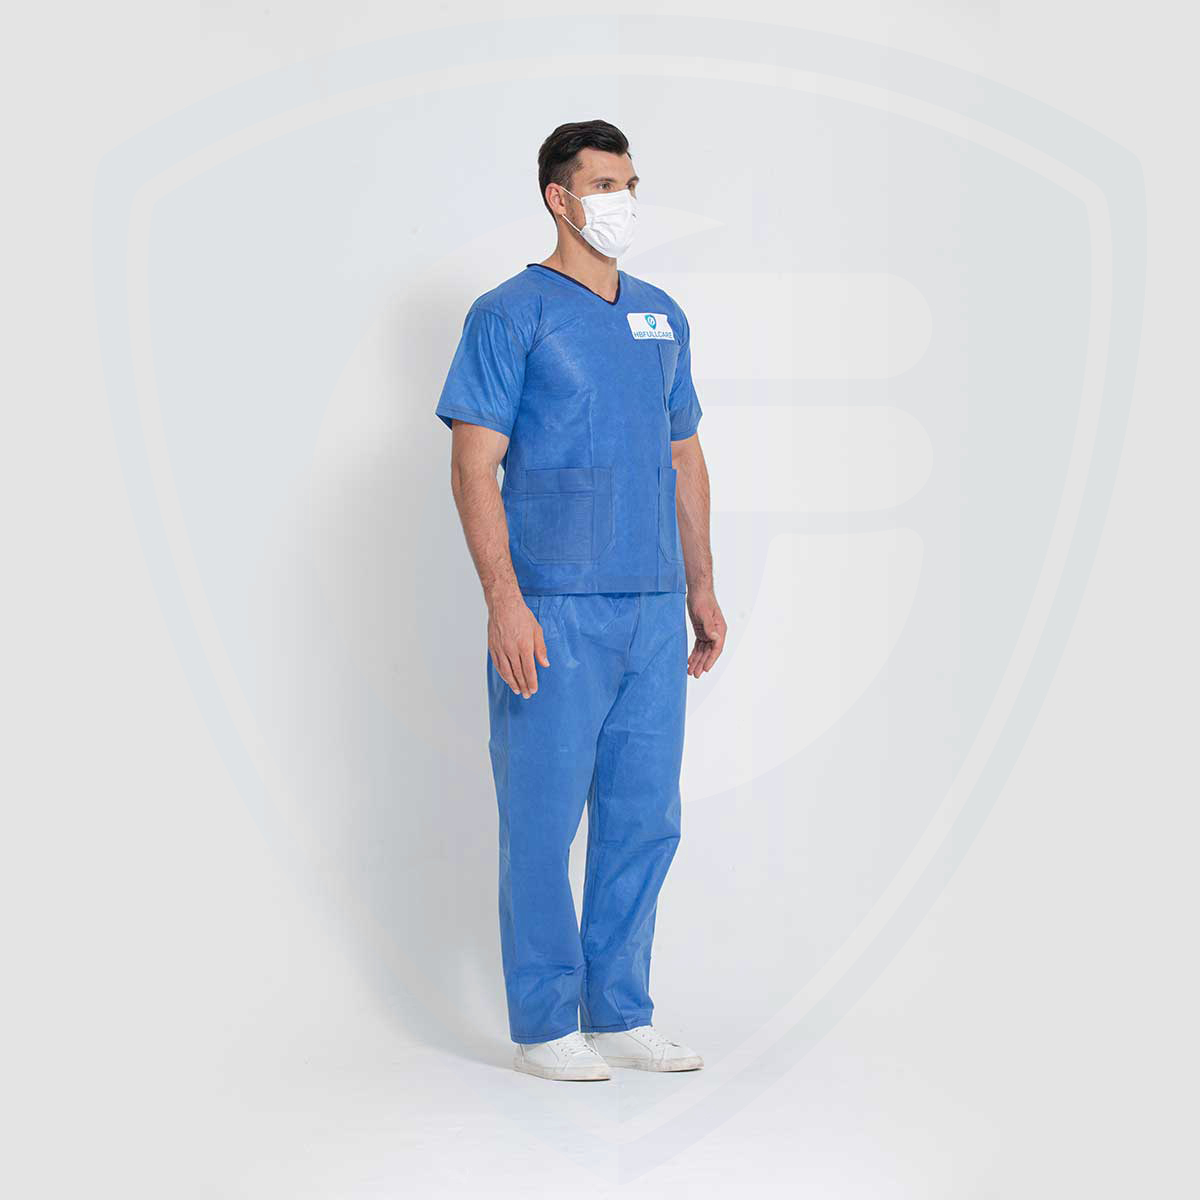 Camice per paziente chirurgico blu monouso in tessuto non tessuto Scrub per ospedale